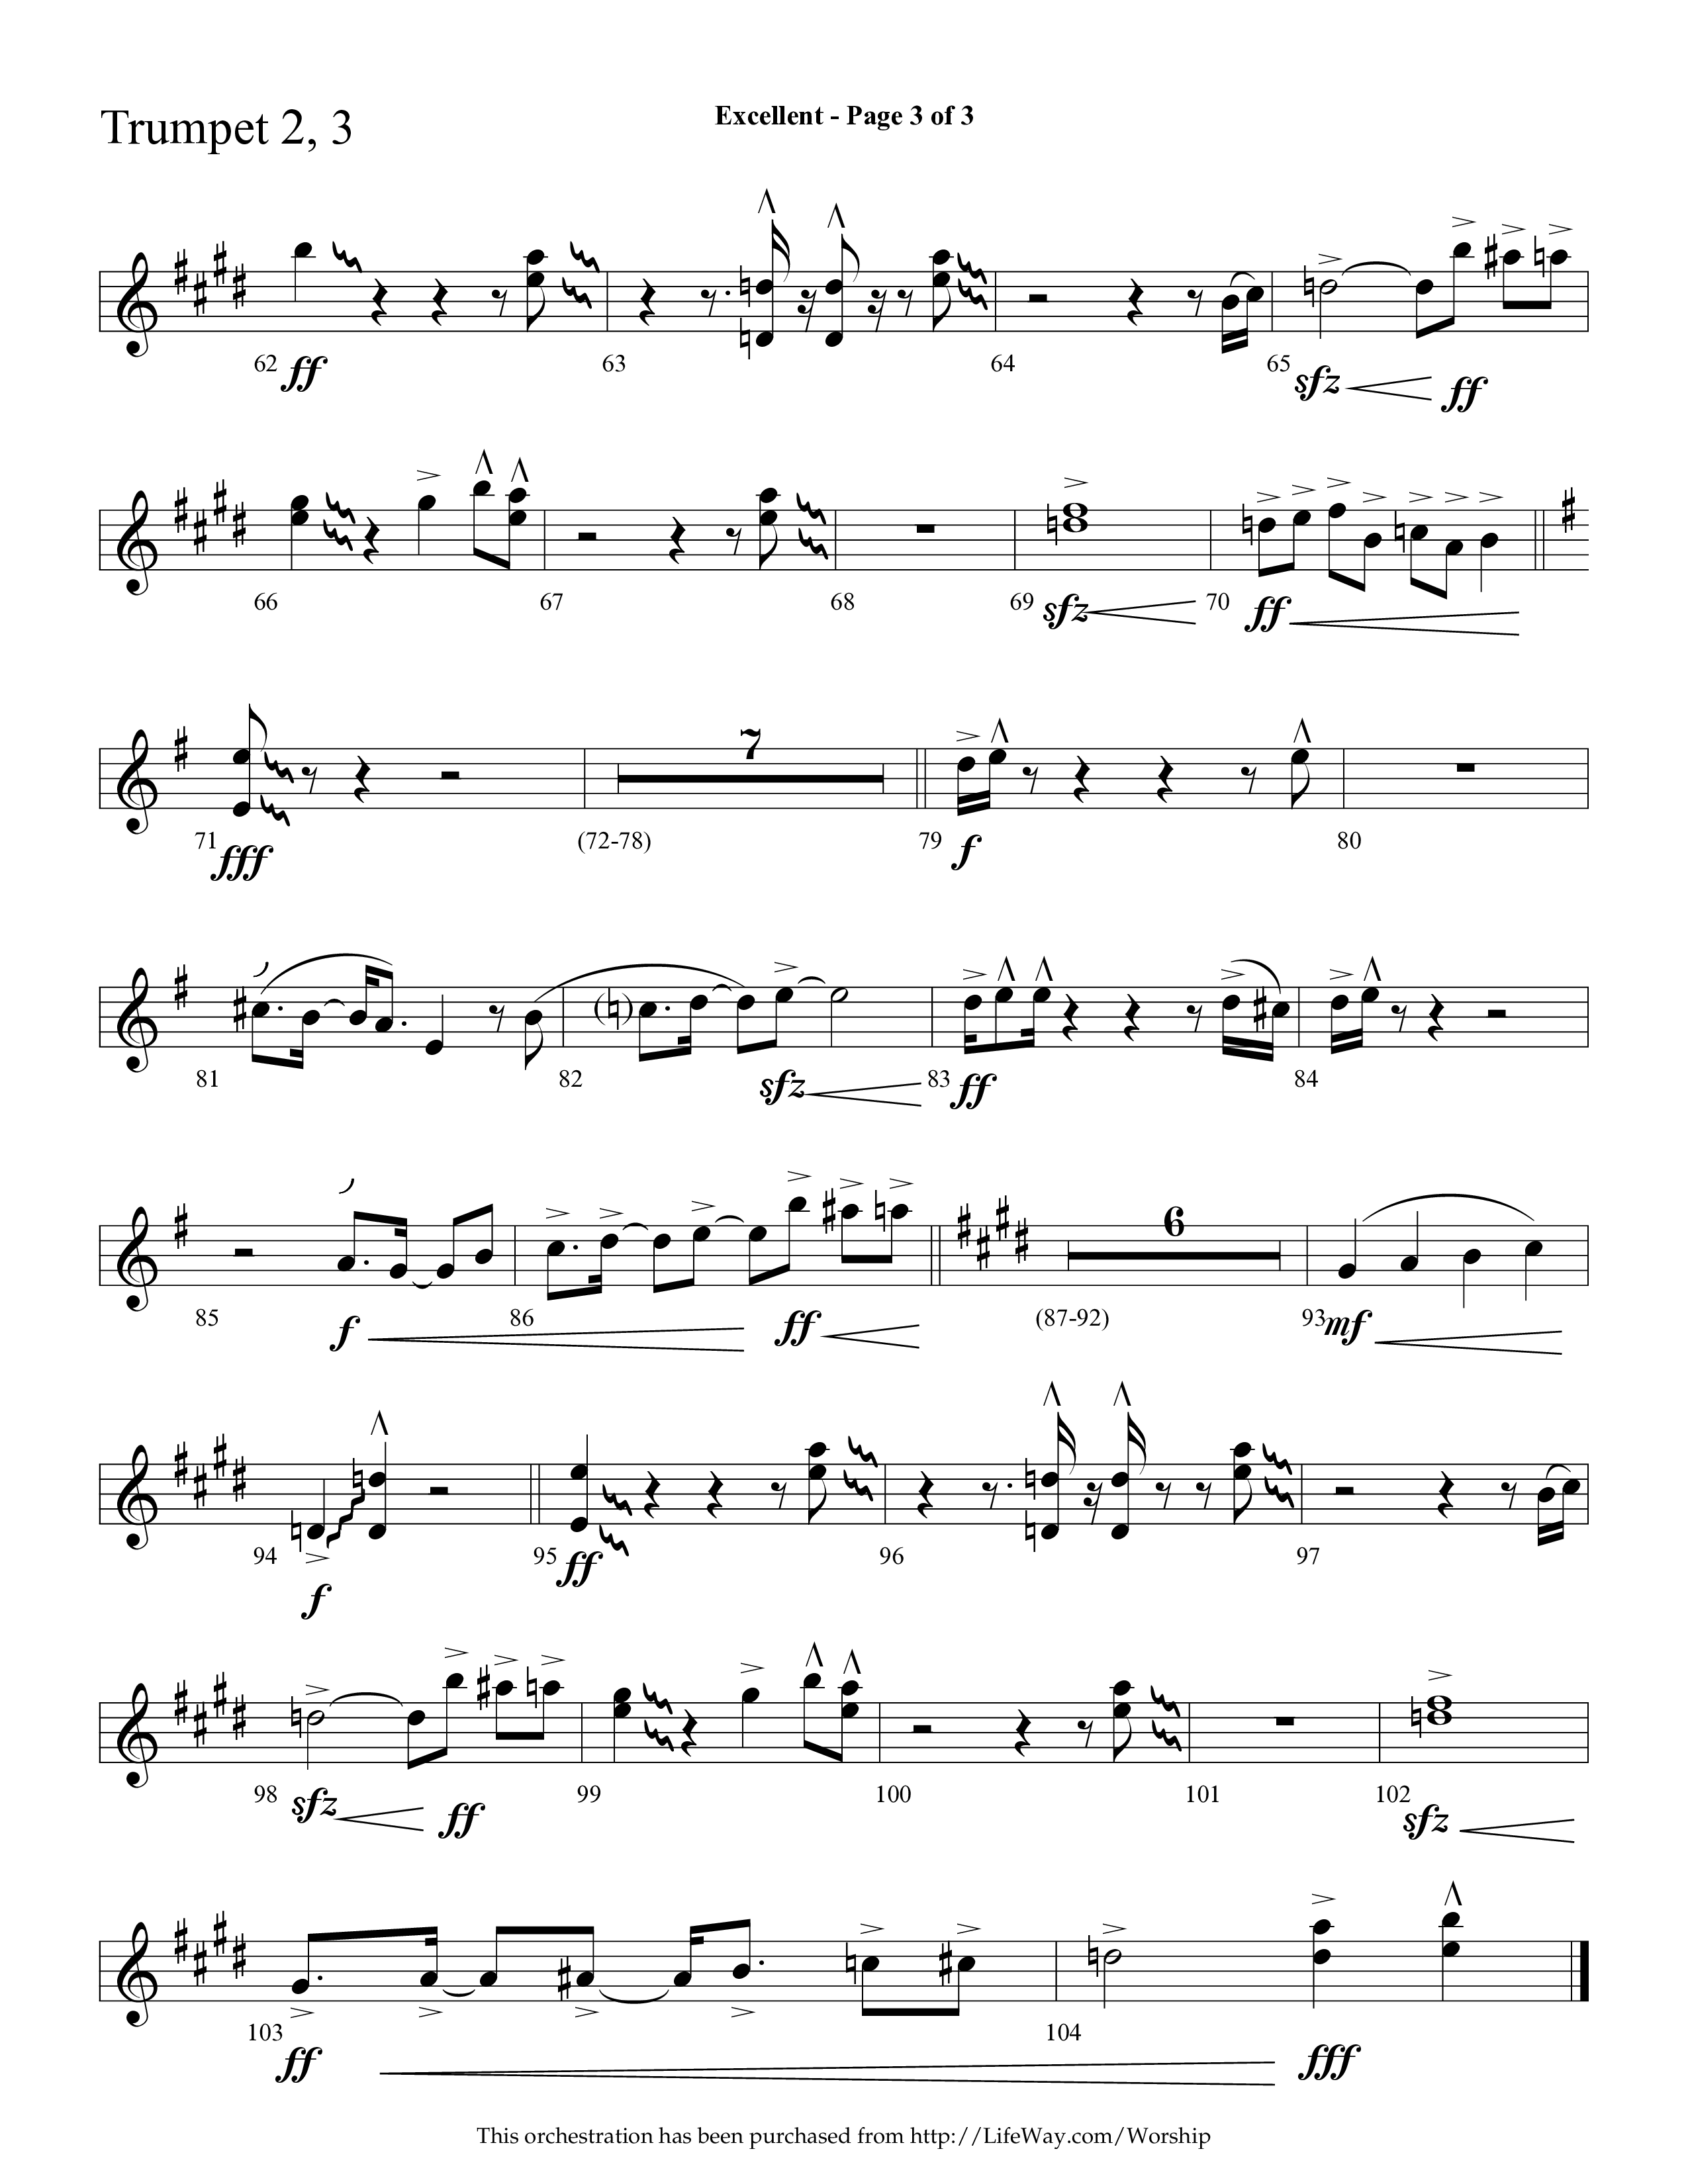 Excellent (Choral Anthem SATB) Trumpet 2/3 (Lifeway Choral / Arr. Cliff Duren)